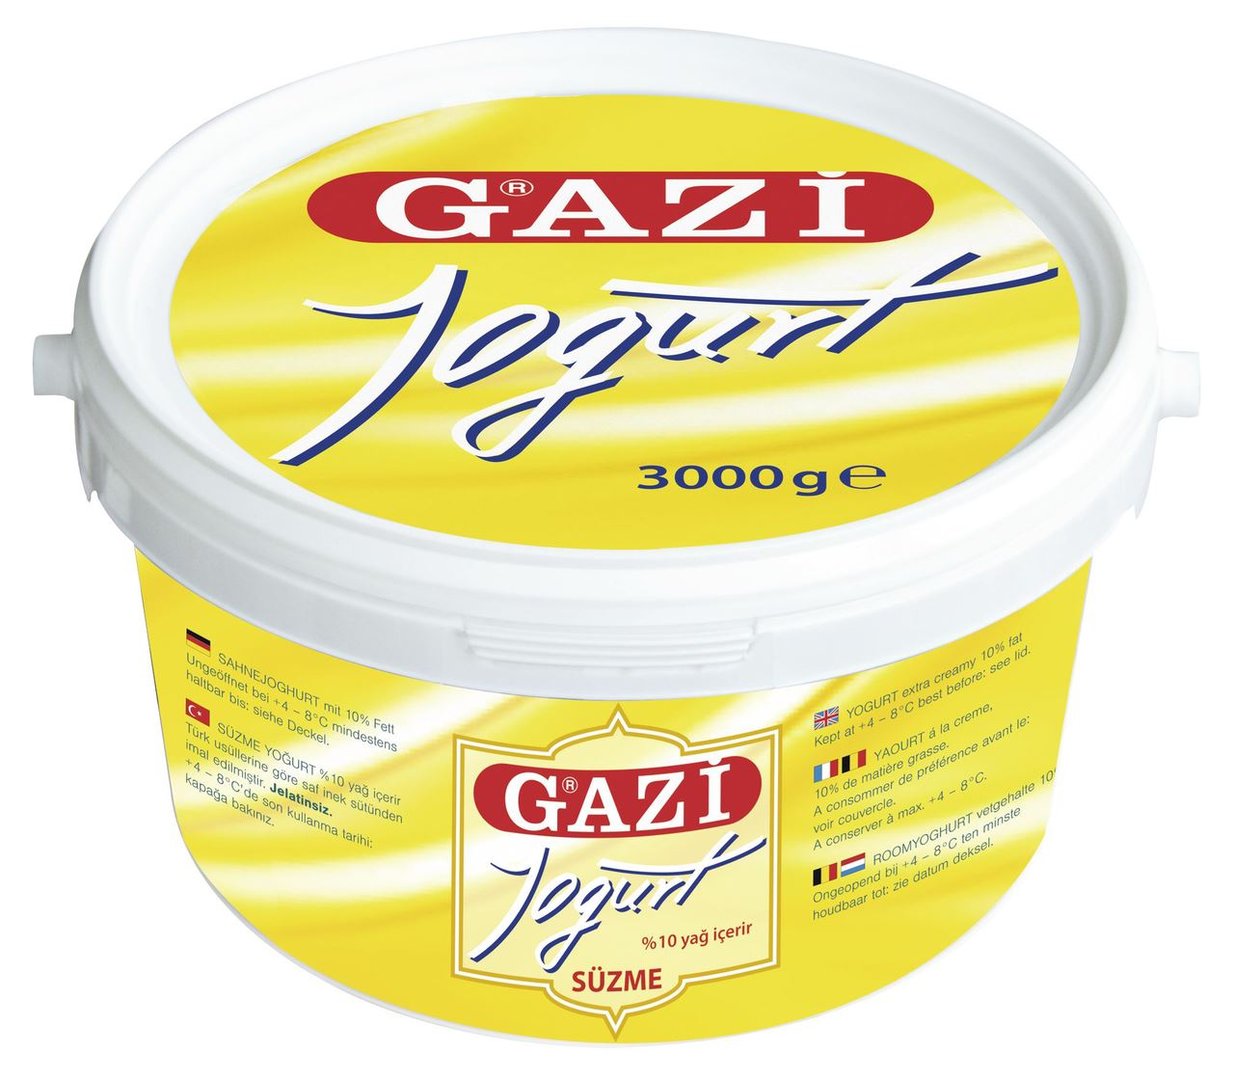 Gazi - stichfester Sahnejoghurt Türkischer Sahnejoghurt, 10 % Fett 3 kg Eimer